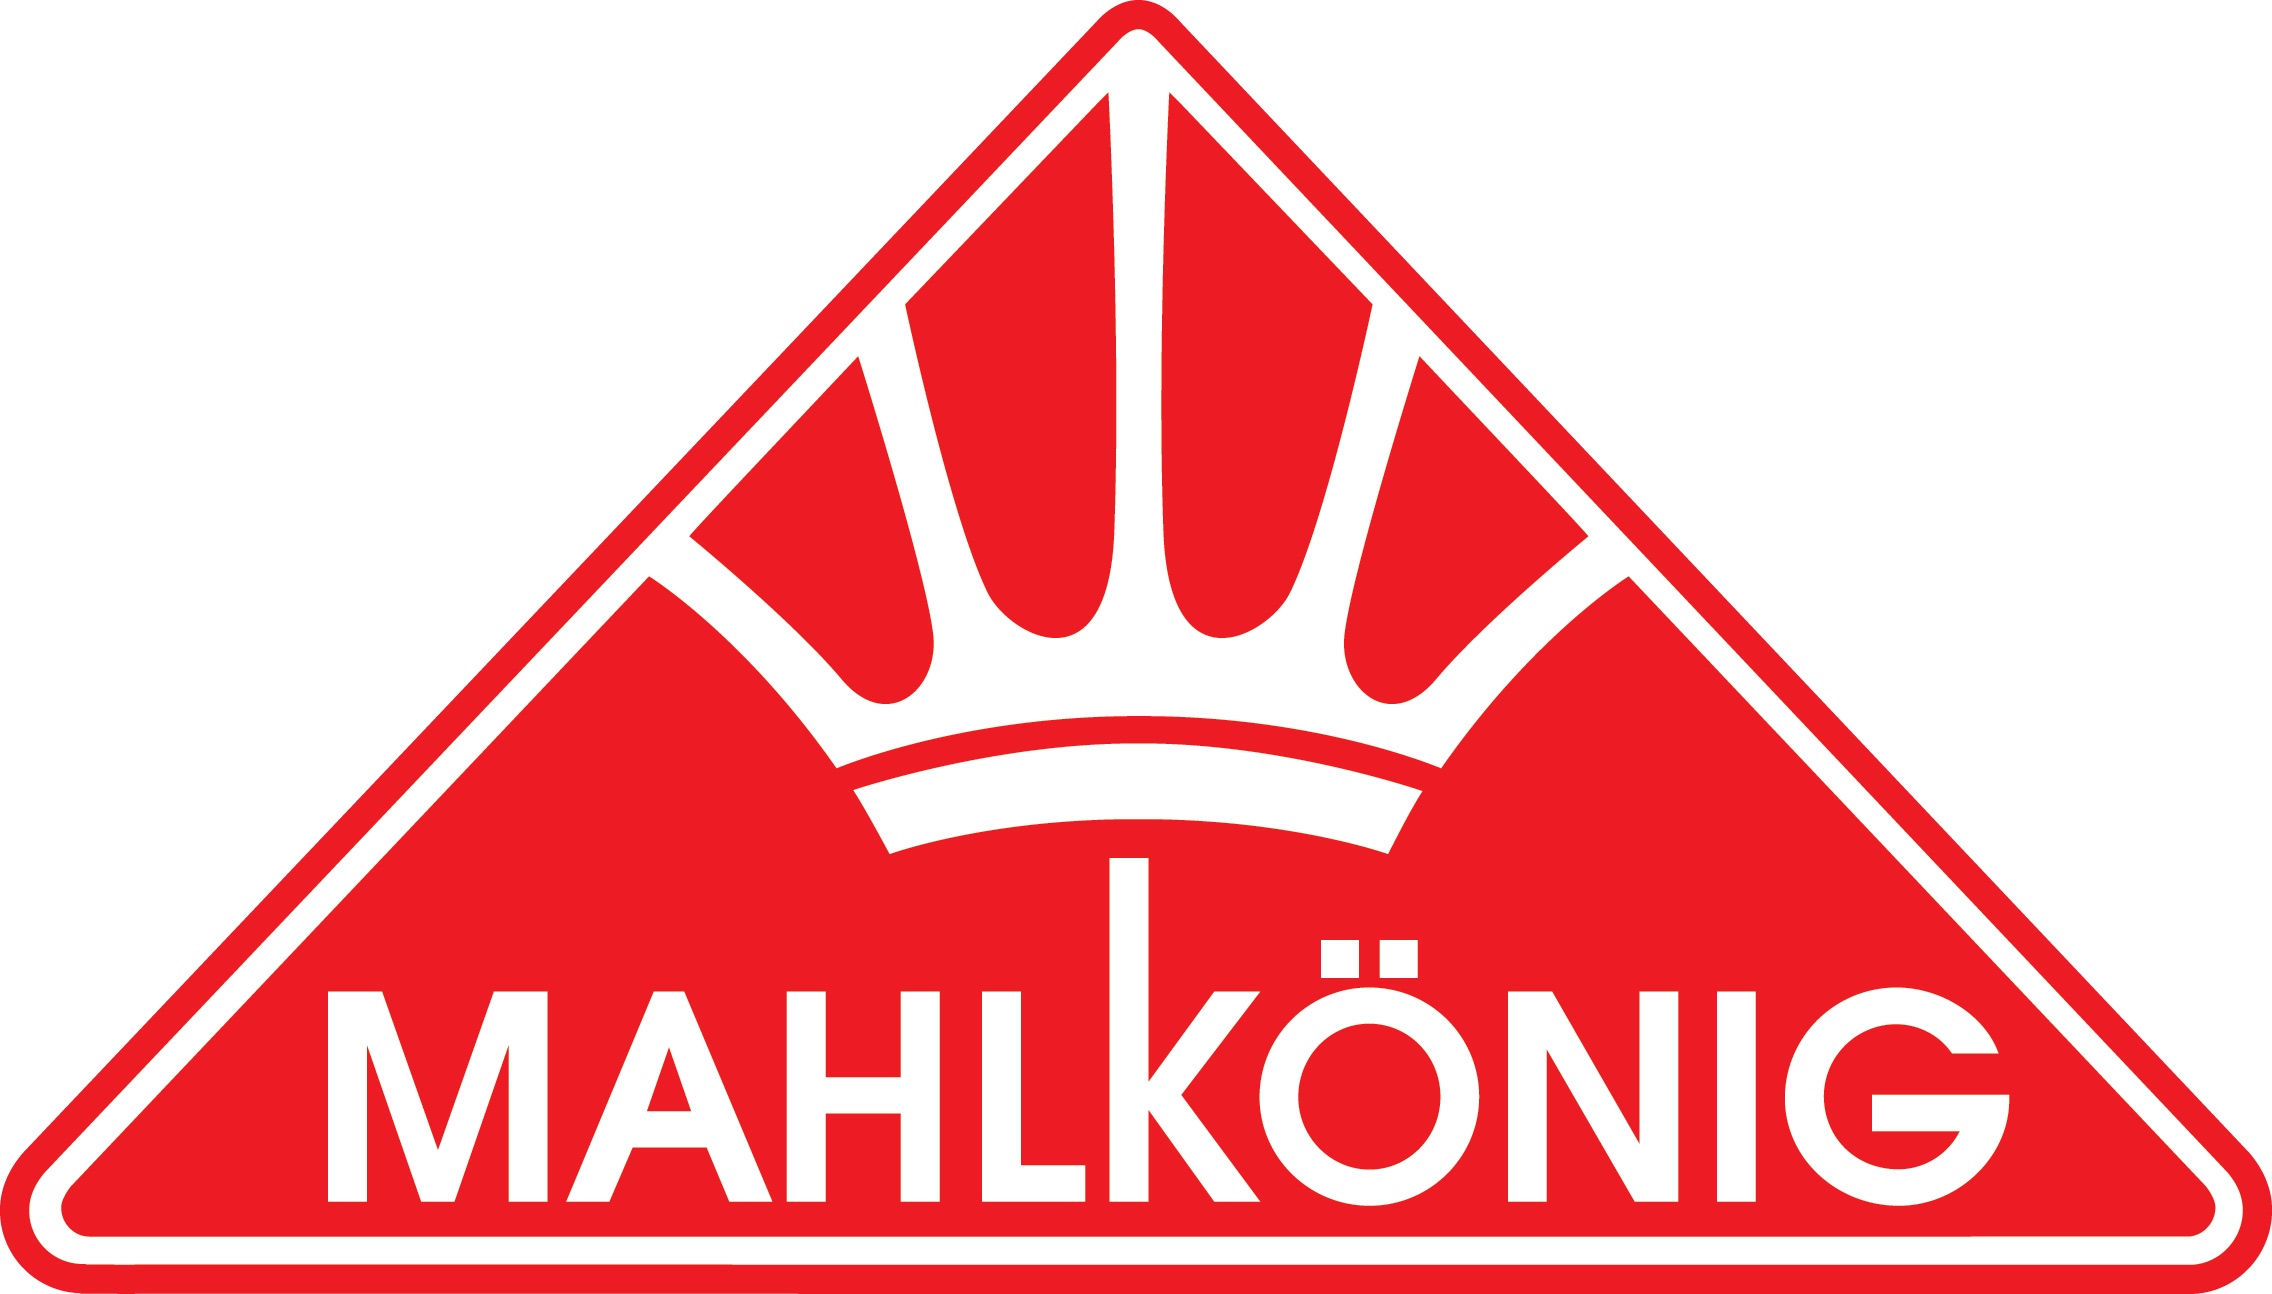 MAHLK0NIG-vector-logo.jpg